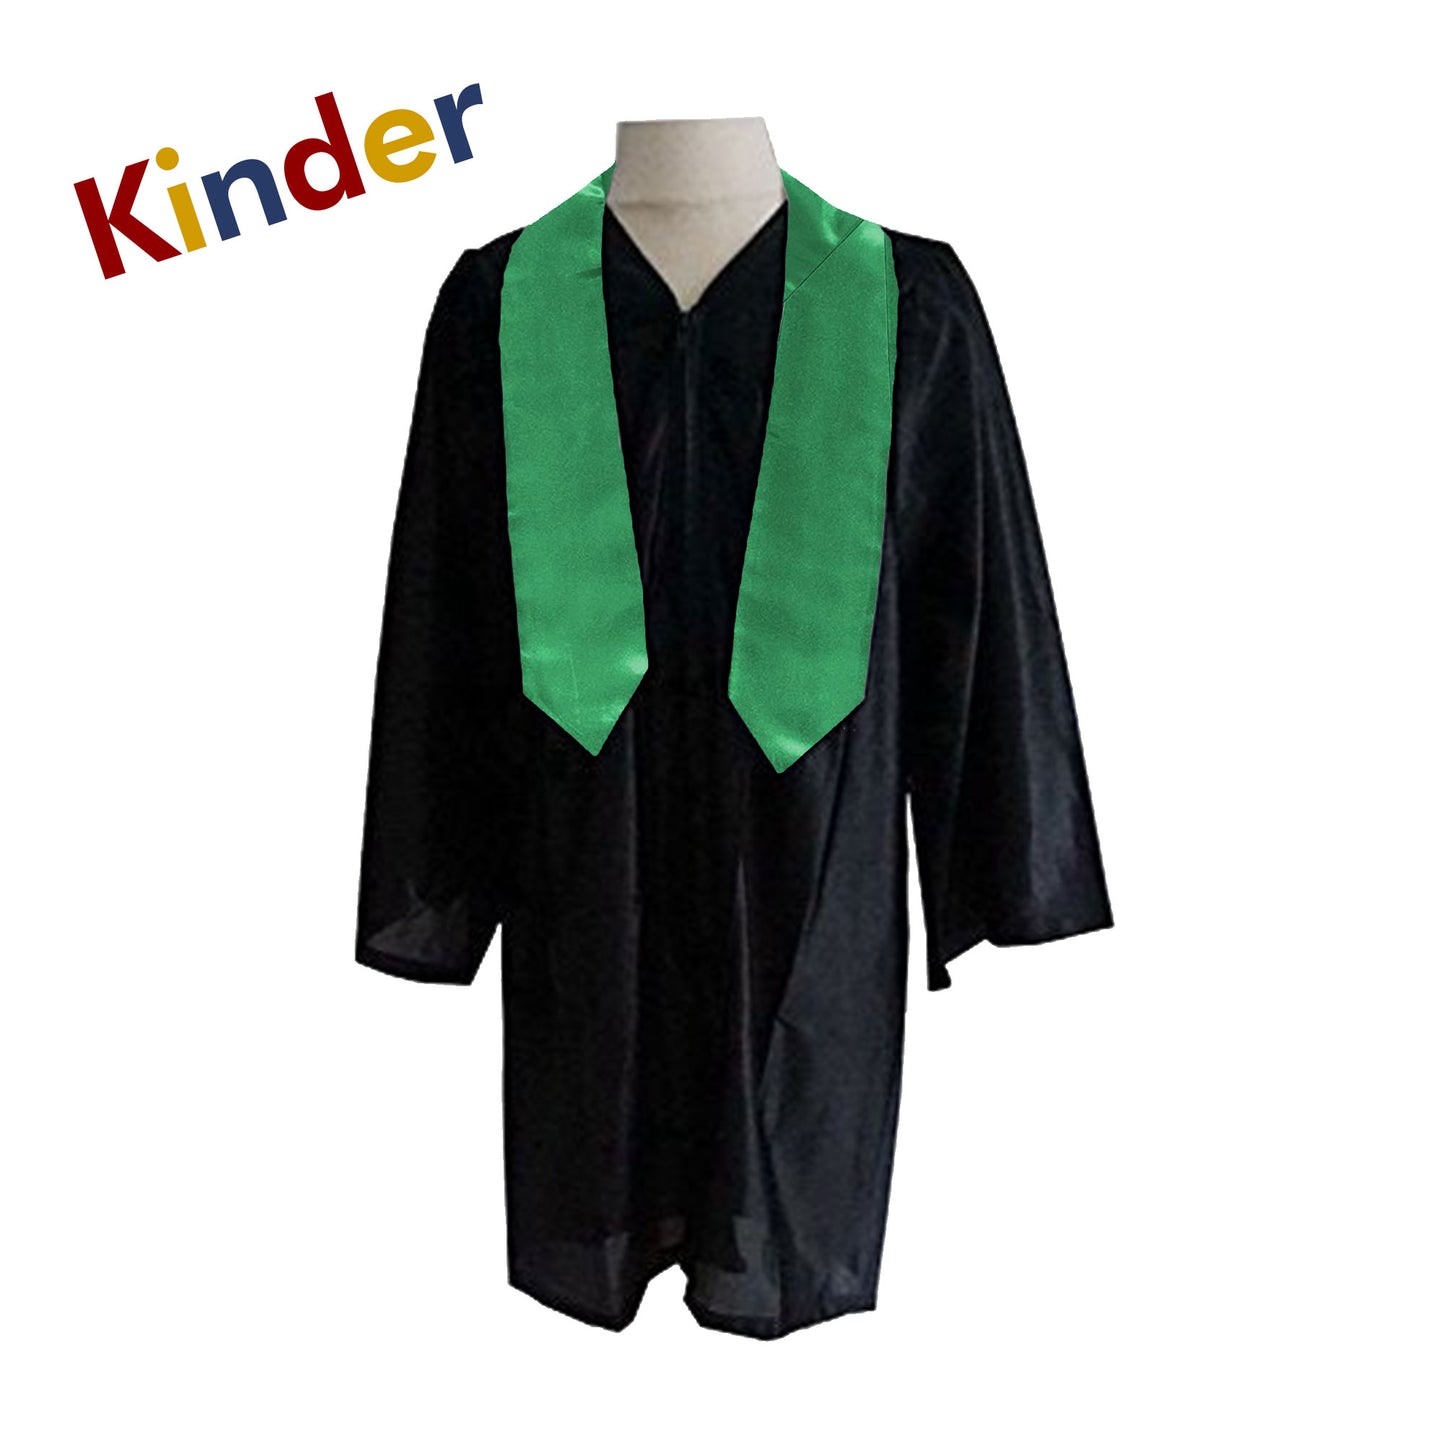 Emerald Kindergarten Preschool Graduation Stole - Clearance Sale